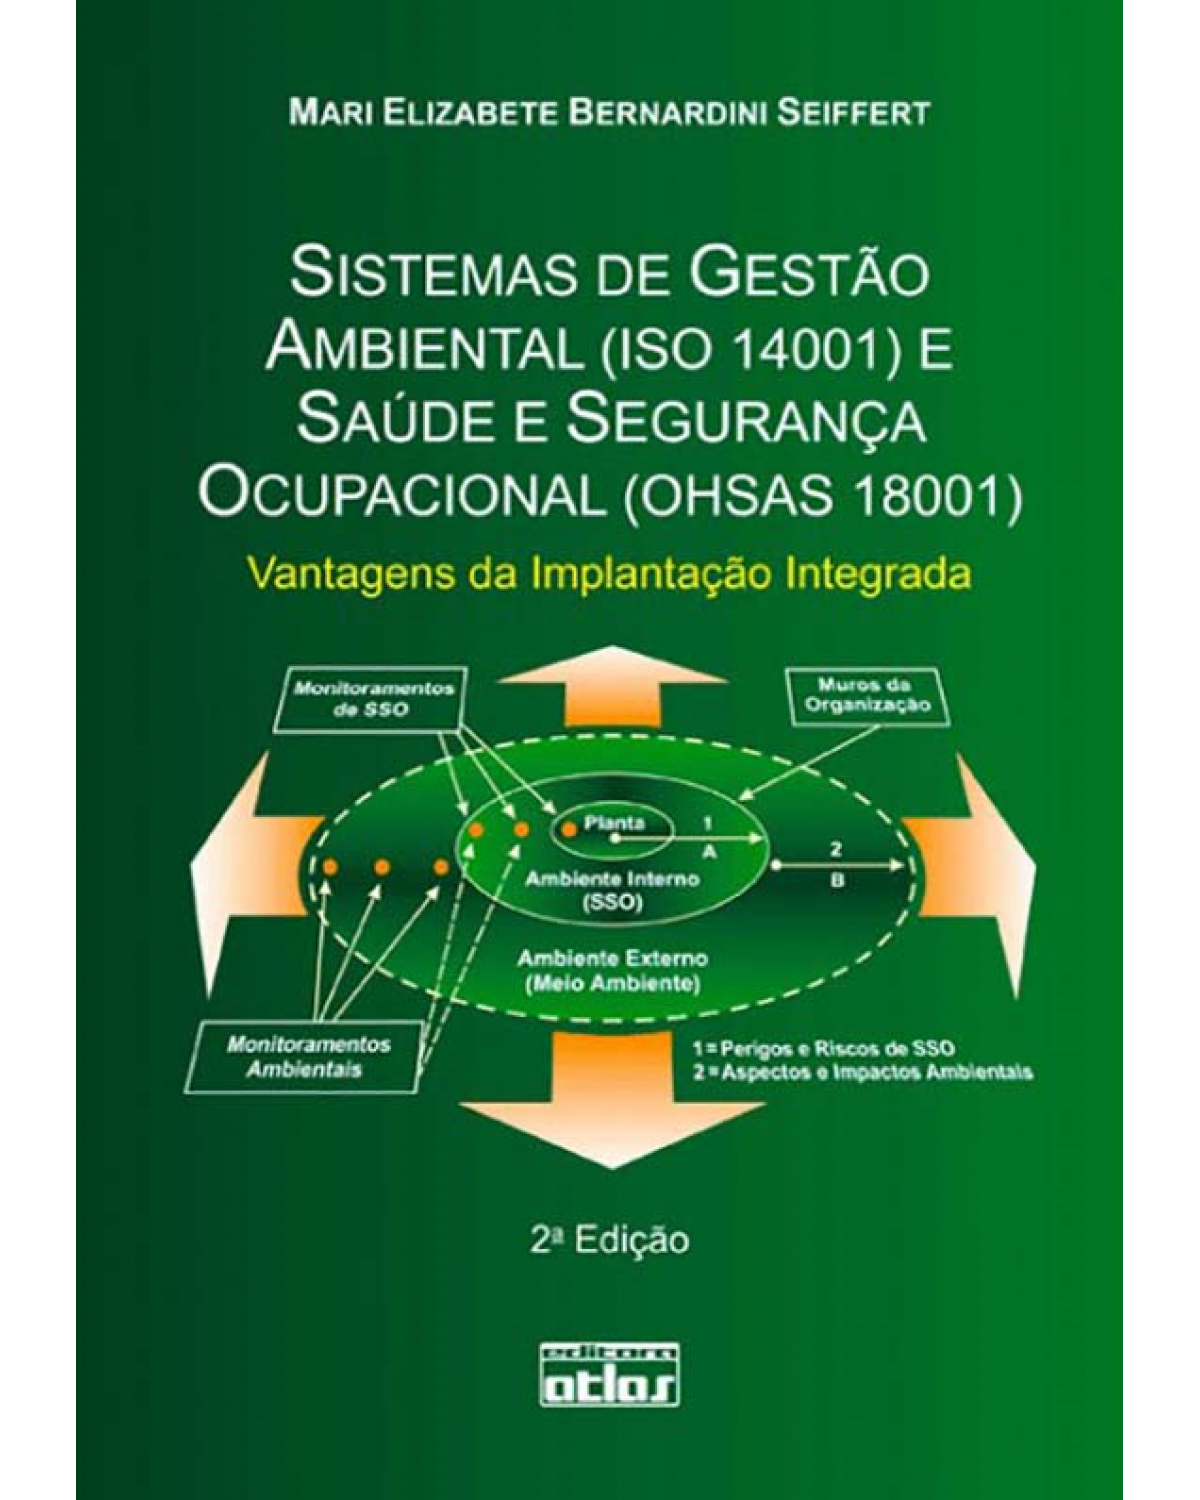 Sistemas de gestão ambiental (ISO 14001) e saúde e segurança ocupacional (OHSAS 18001) - Vantagens da implantação integrada - 2ª Edição | 2010